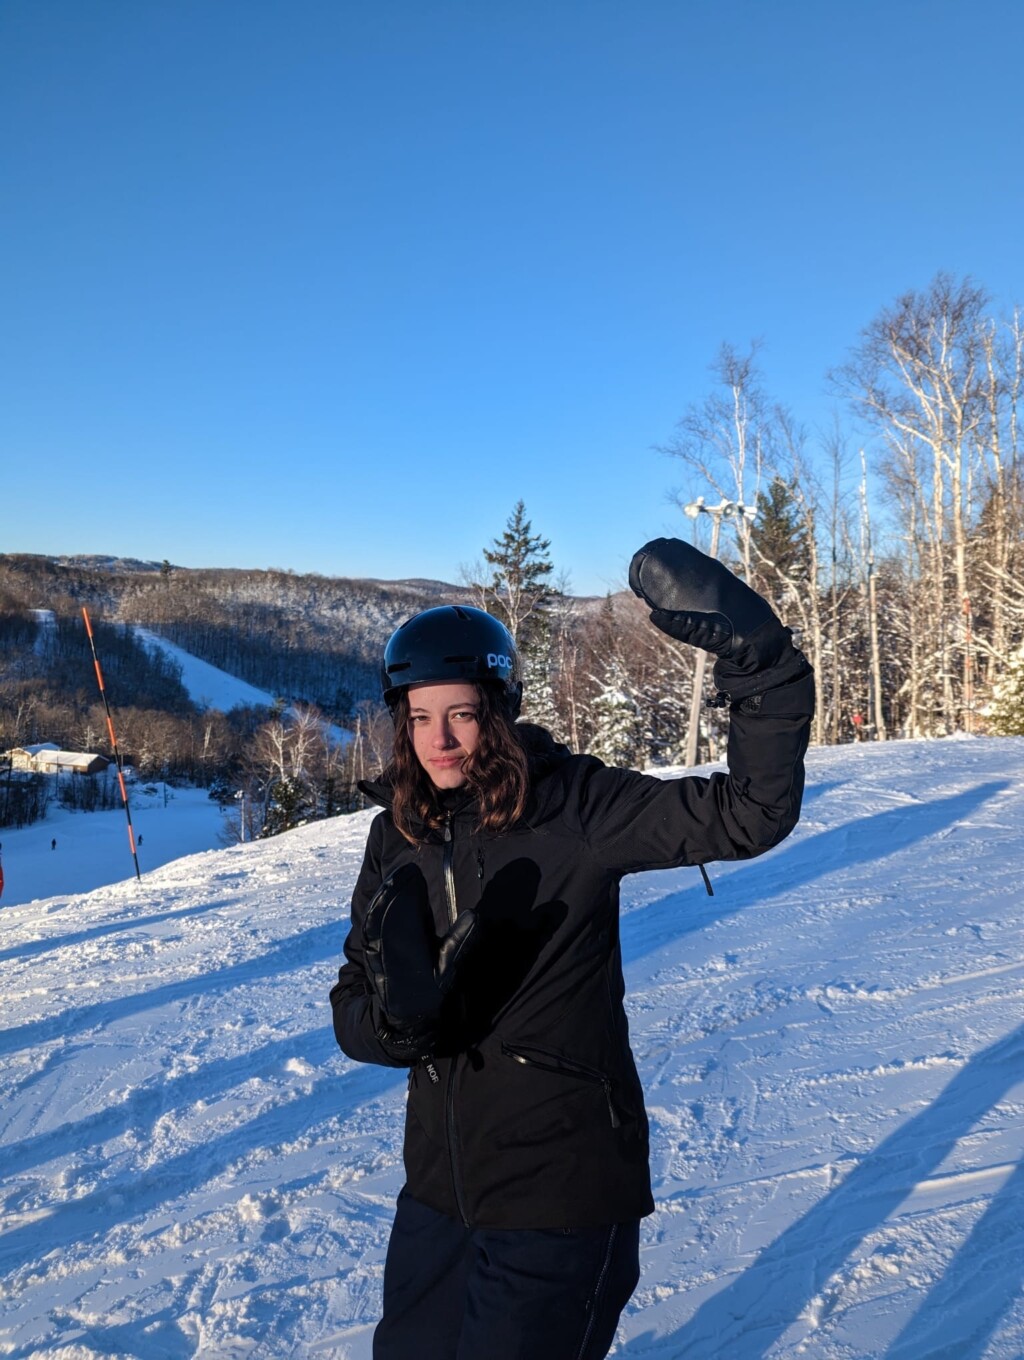 personne bilingue sur une piste de ski en habit noir complet et fait signe de salut avec la main